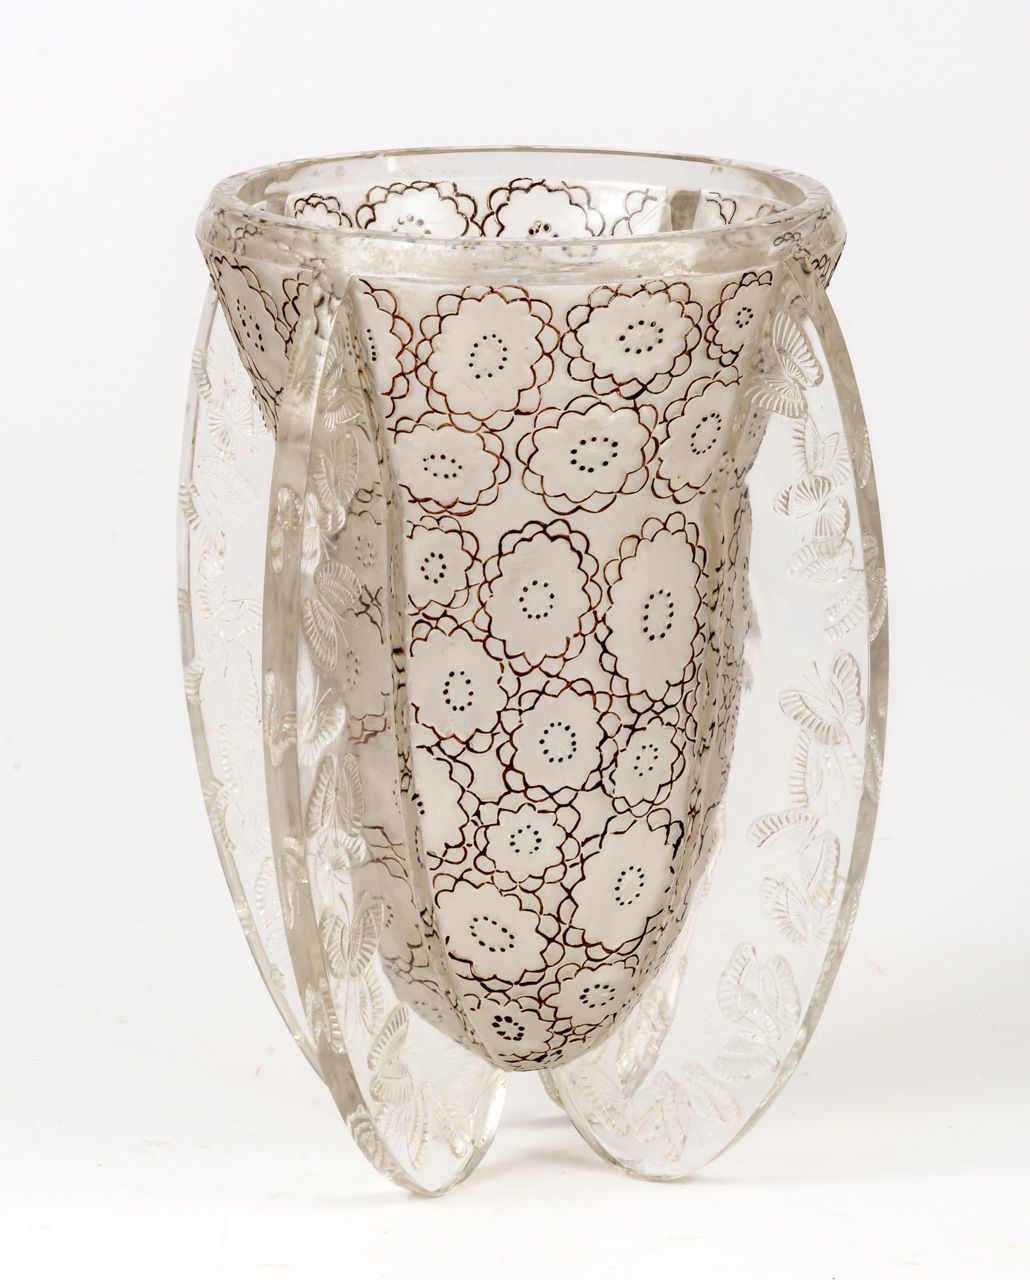 SELTENE PAPILLONS VASE VON LALIQUE Glas, bezeichnet "LALIQUE FRANCE"

H: 22,5 cm